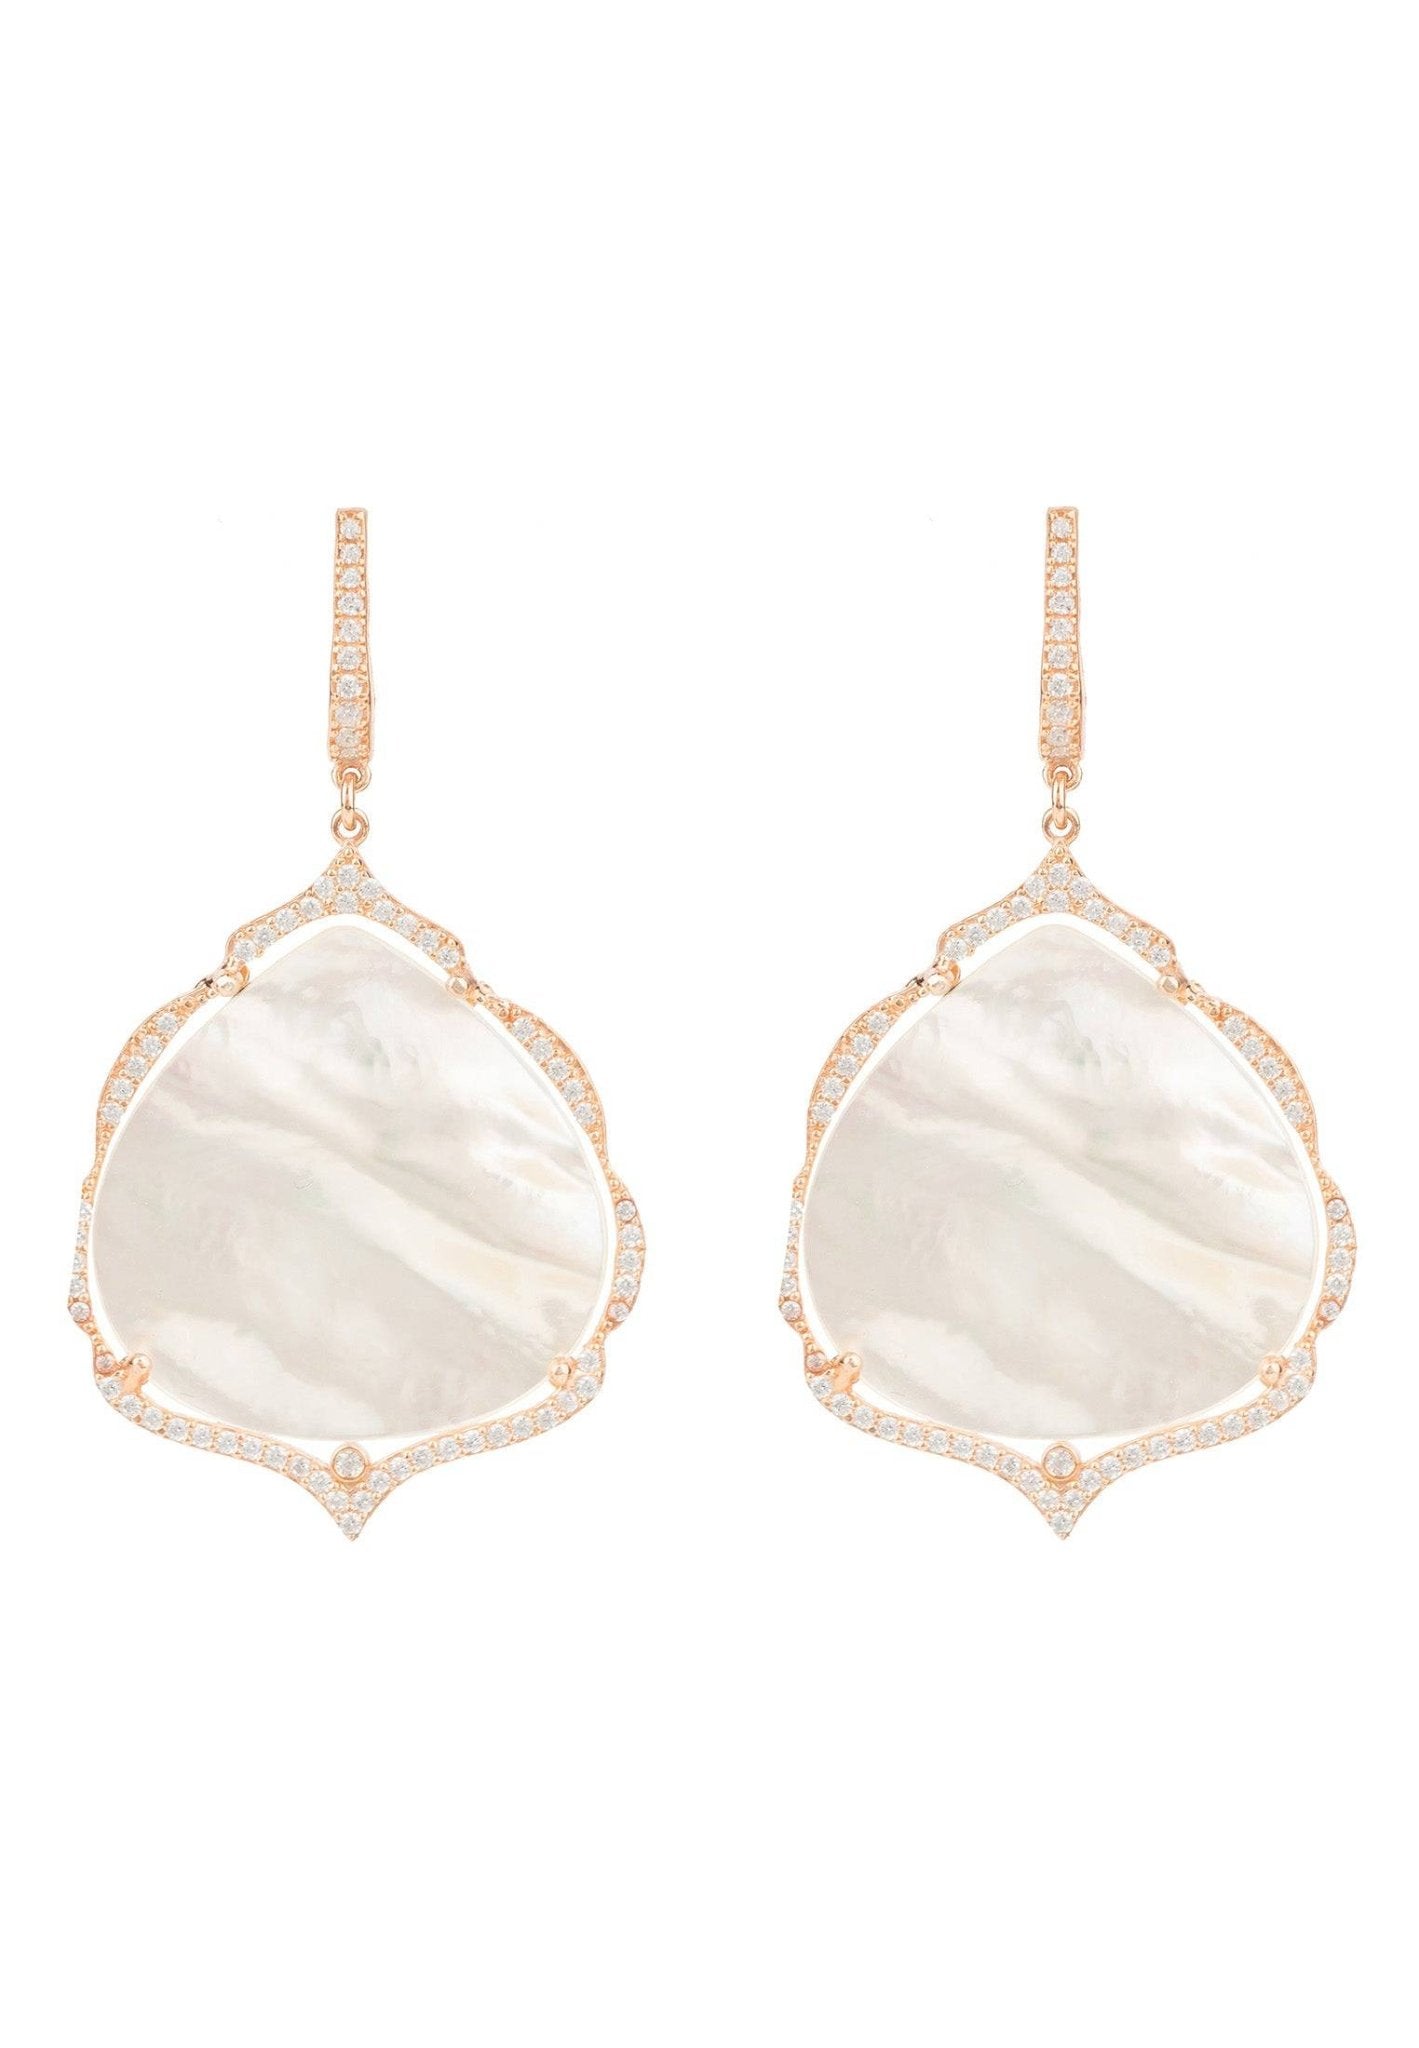 Antoinette Earrings White Mother Of Pearl Rosegold - LATELITA Earrings